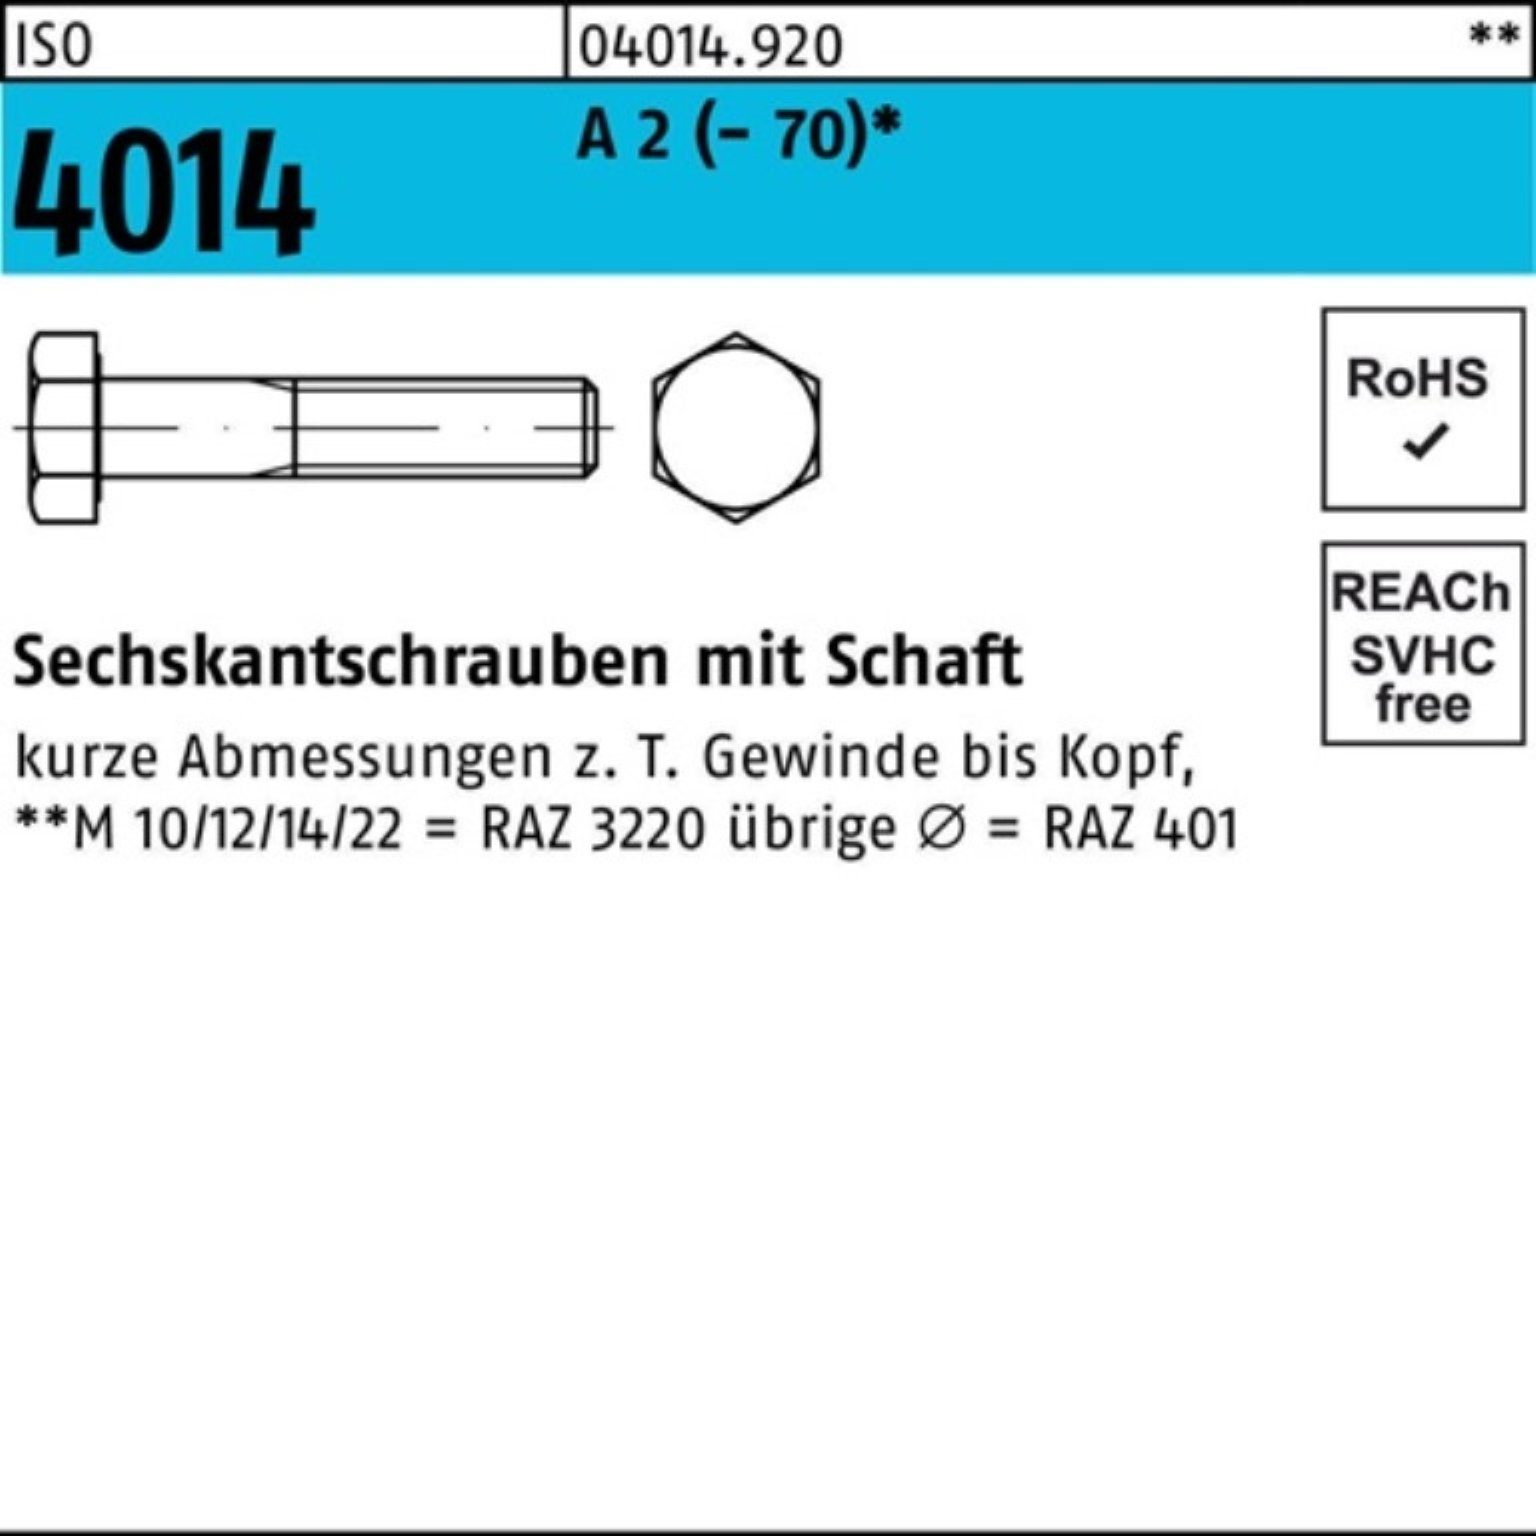 Bufab Sechskantschraube 100er Pack Sechskantschraube ISO 4014 Schaft M16x 210 A 2 (70) 1 St